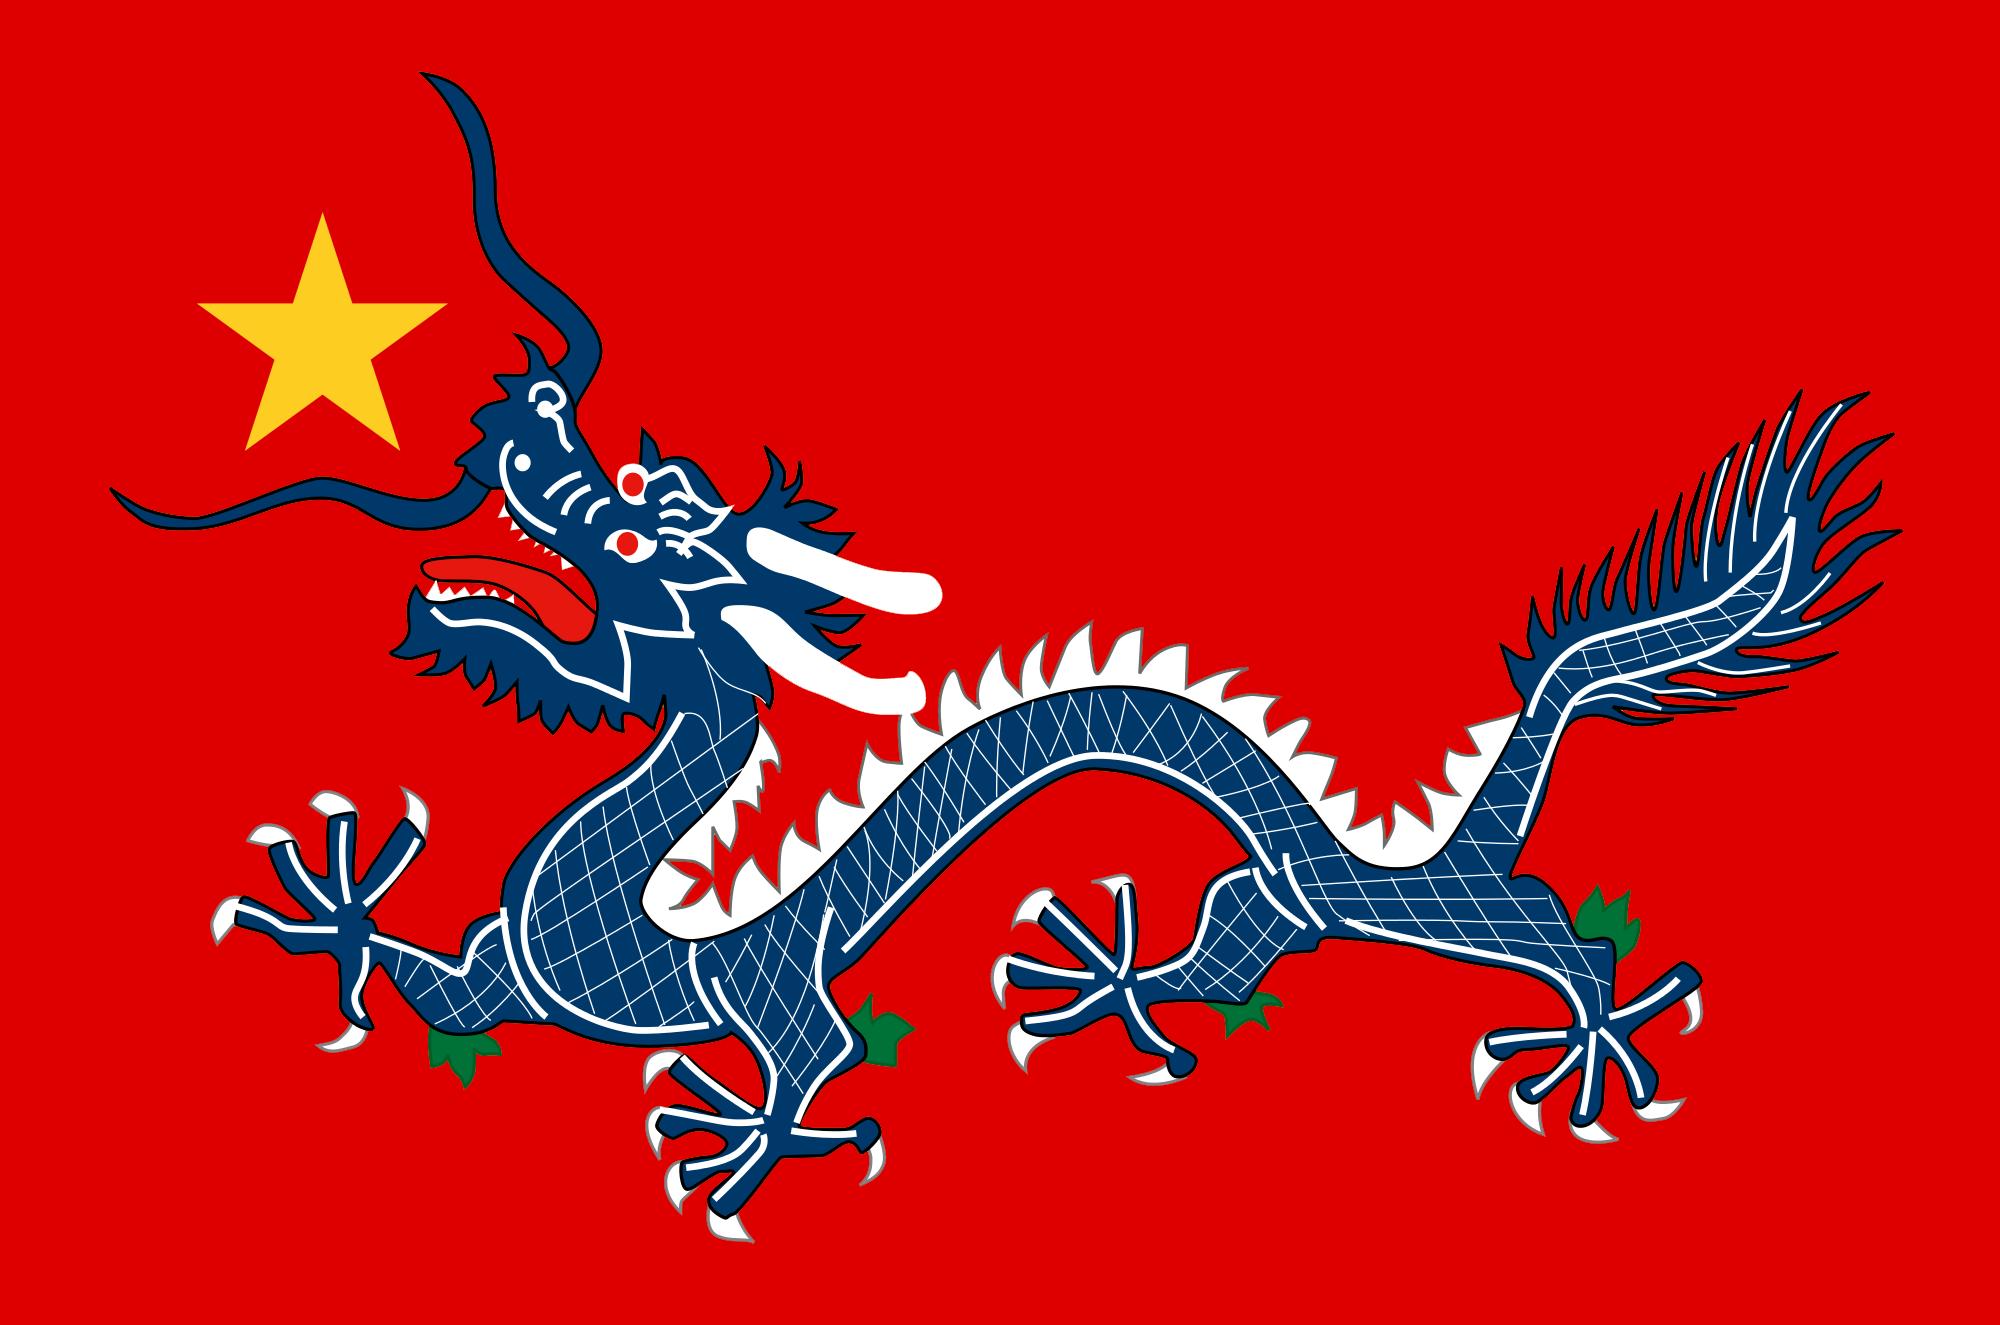 Chinese Red Star Logo - FULLCOMMUNIST Qing - Album on Imgur